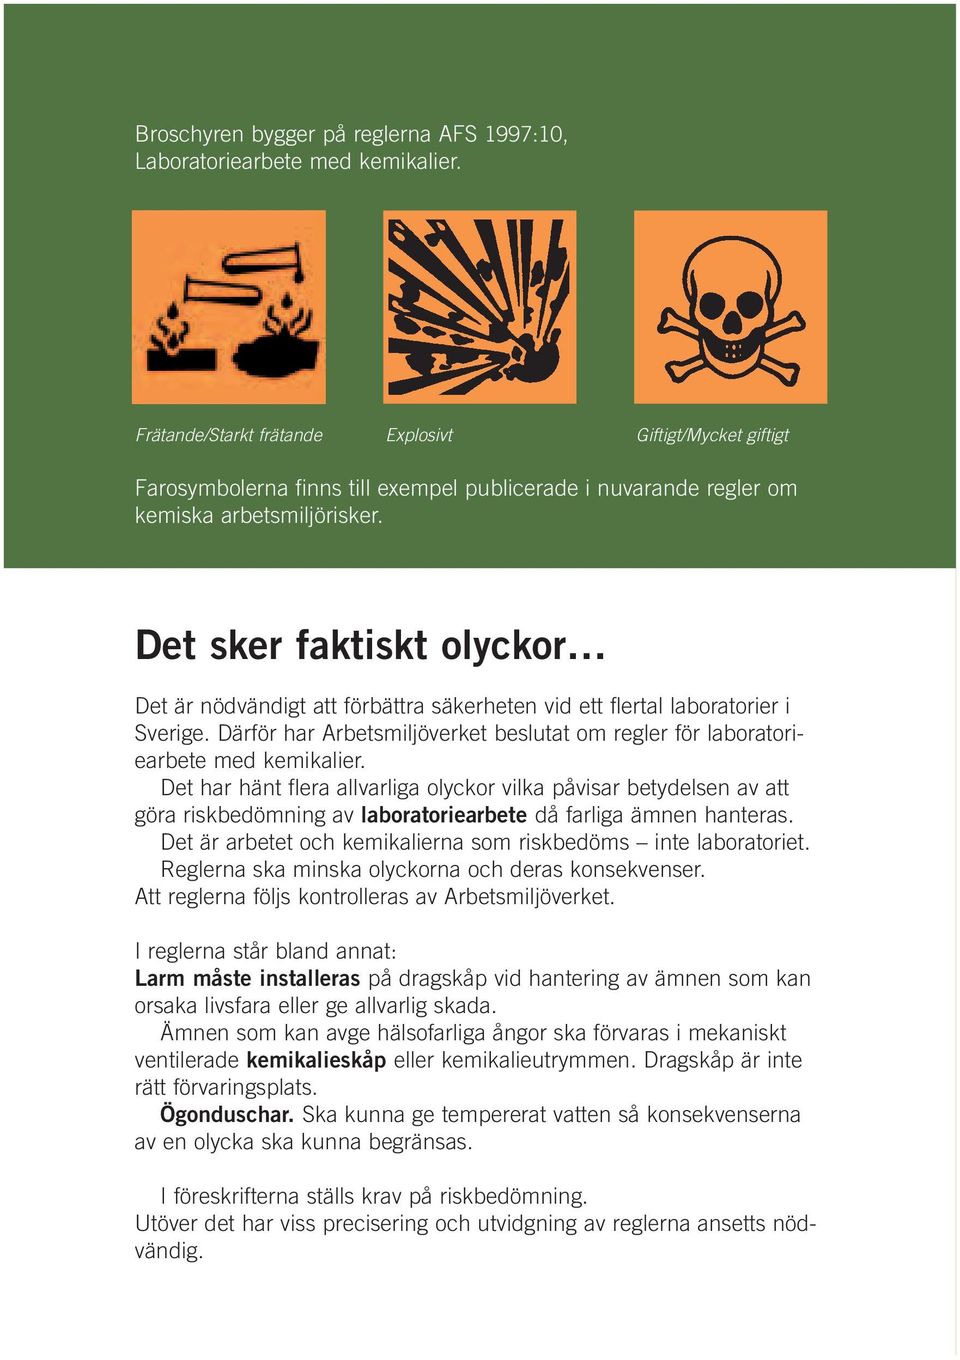 Det sker faktiskt olyckor Det är nödvändigt att förbättra säkerheten vid ett flertal laboratorier i Sverige. Därför har Arbetsmiljöverket beslutat om regler för laboratoriearbete med kemikalier.